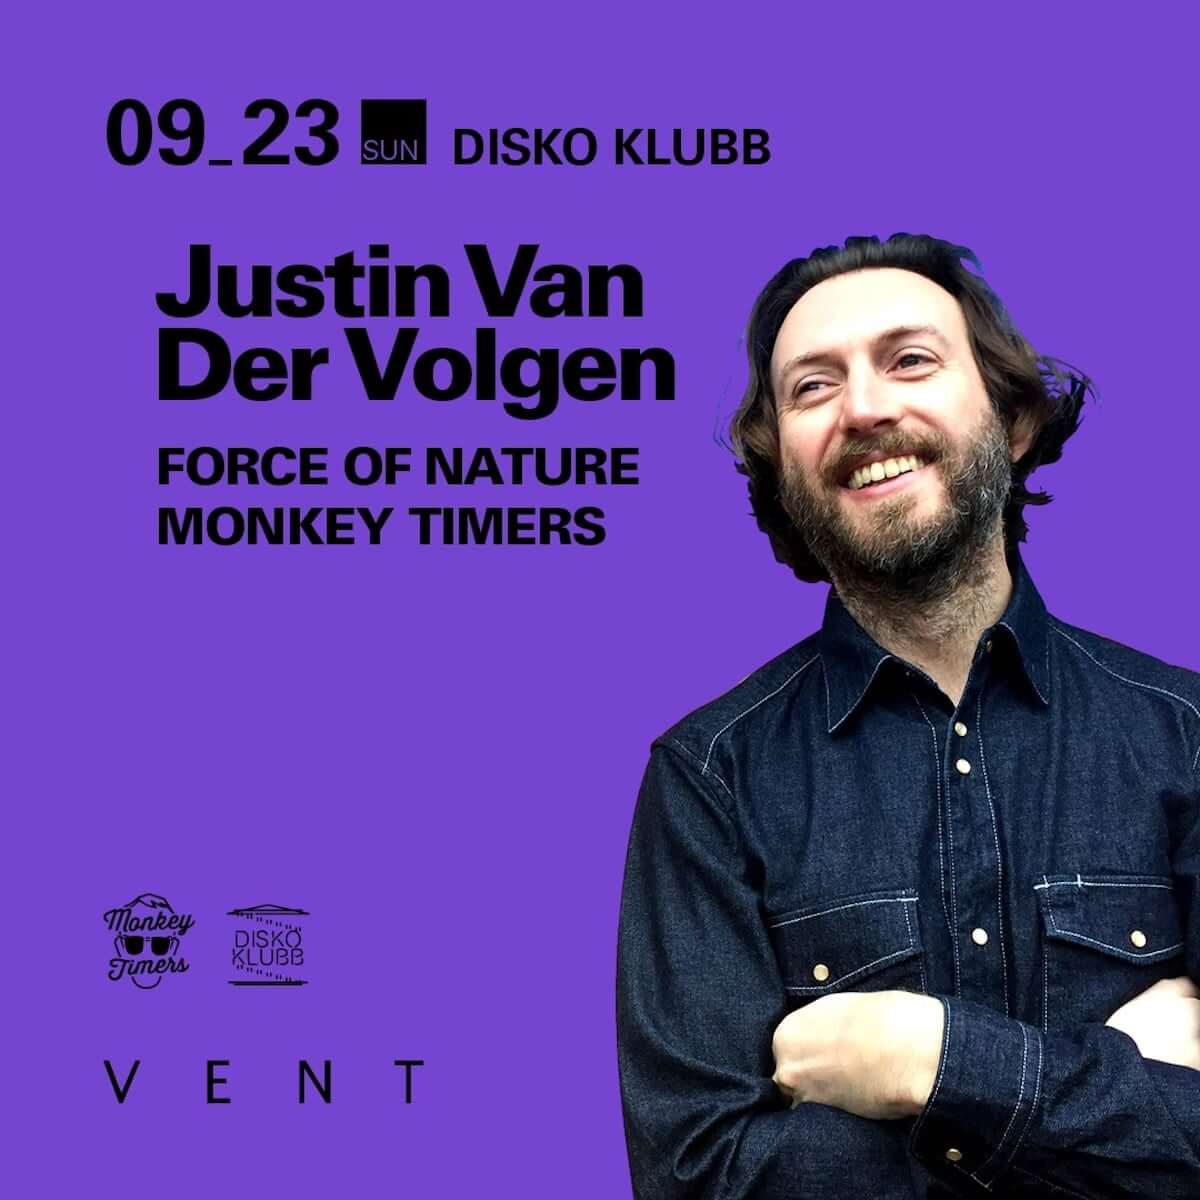 史上最狂のディスコ・パンクバンド!!!の創設者Justin Van Der VolgenがMONKEY TIMERSによる「DISKO KLUBB」に登場 music180921-justin-van-der-volgen-2018-2-1200x1200